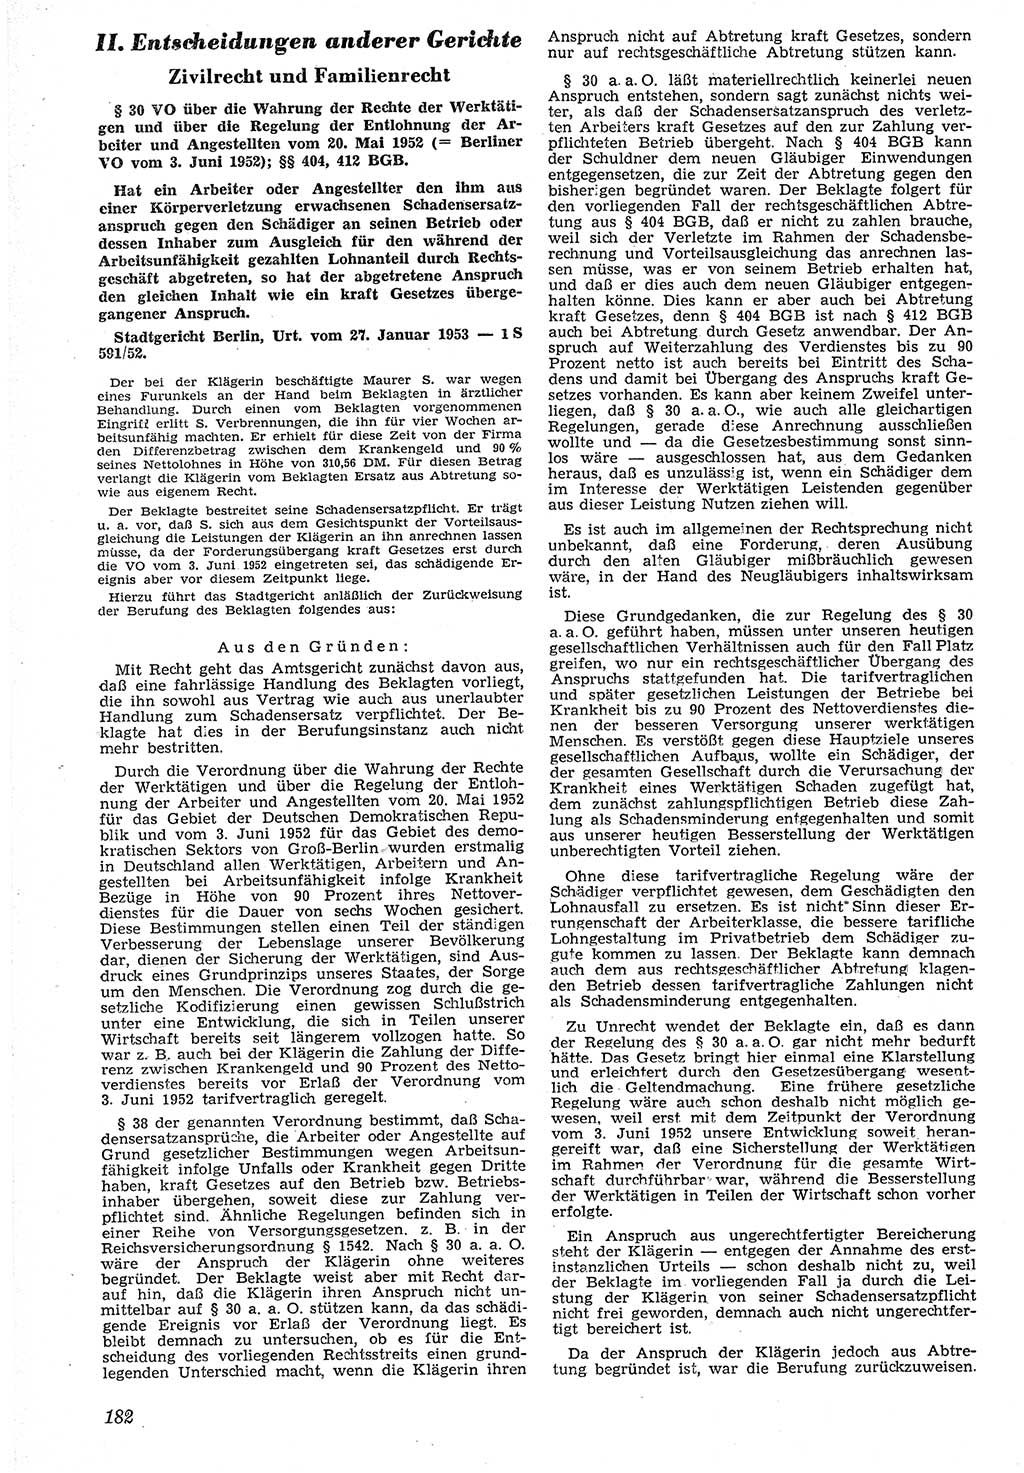 Neue Justiz (NJ), Zeitschrift für Recht und Rechtswissenschaft [Deutsche Demokratische Republik (DDR)], 7. Jahrgang 1953, Seite 182 (NJ DDR 1953, S. 182)